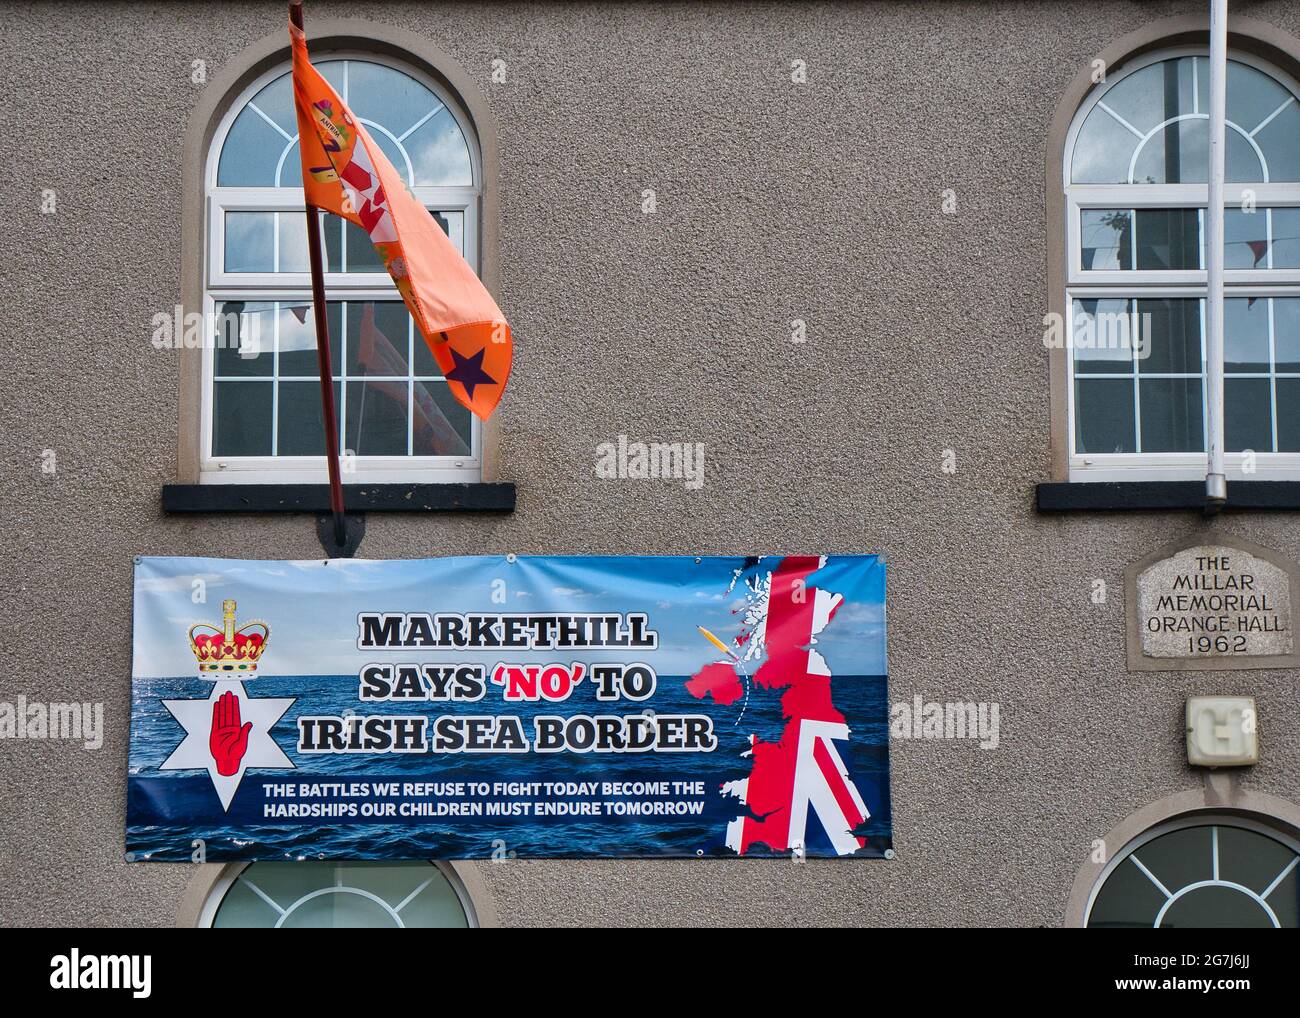 Ein Plakat auf einer Orange Lodge Hall gibt eine Botschaft, dass die Loyalisten von Markethill, Armagh, das Nordirland-Protokoll, das Teil von t ist, nicht akzeptieren Stockfoto